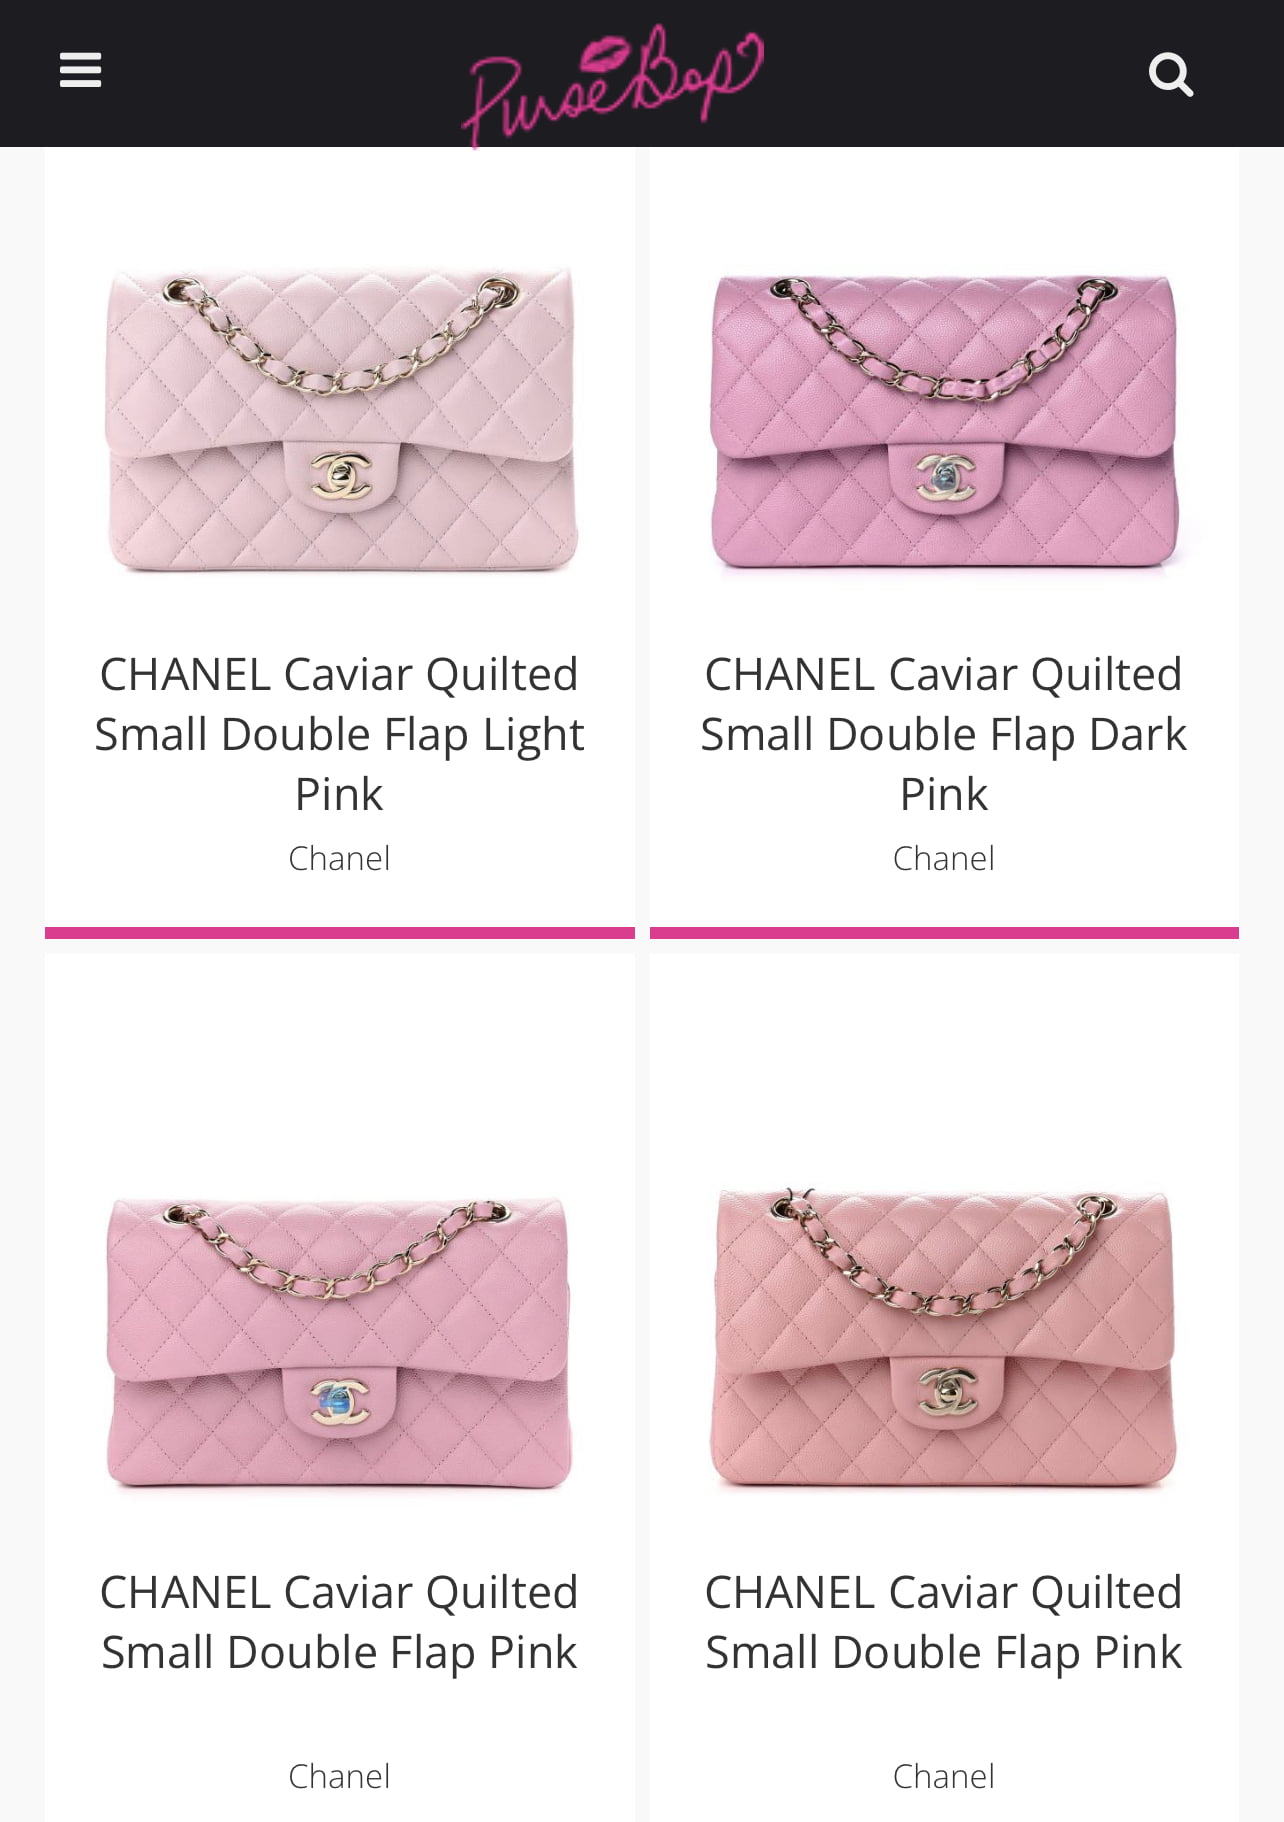 pink chanel flap bag with top handle handbag